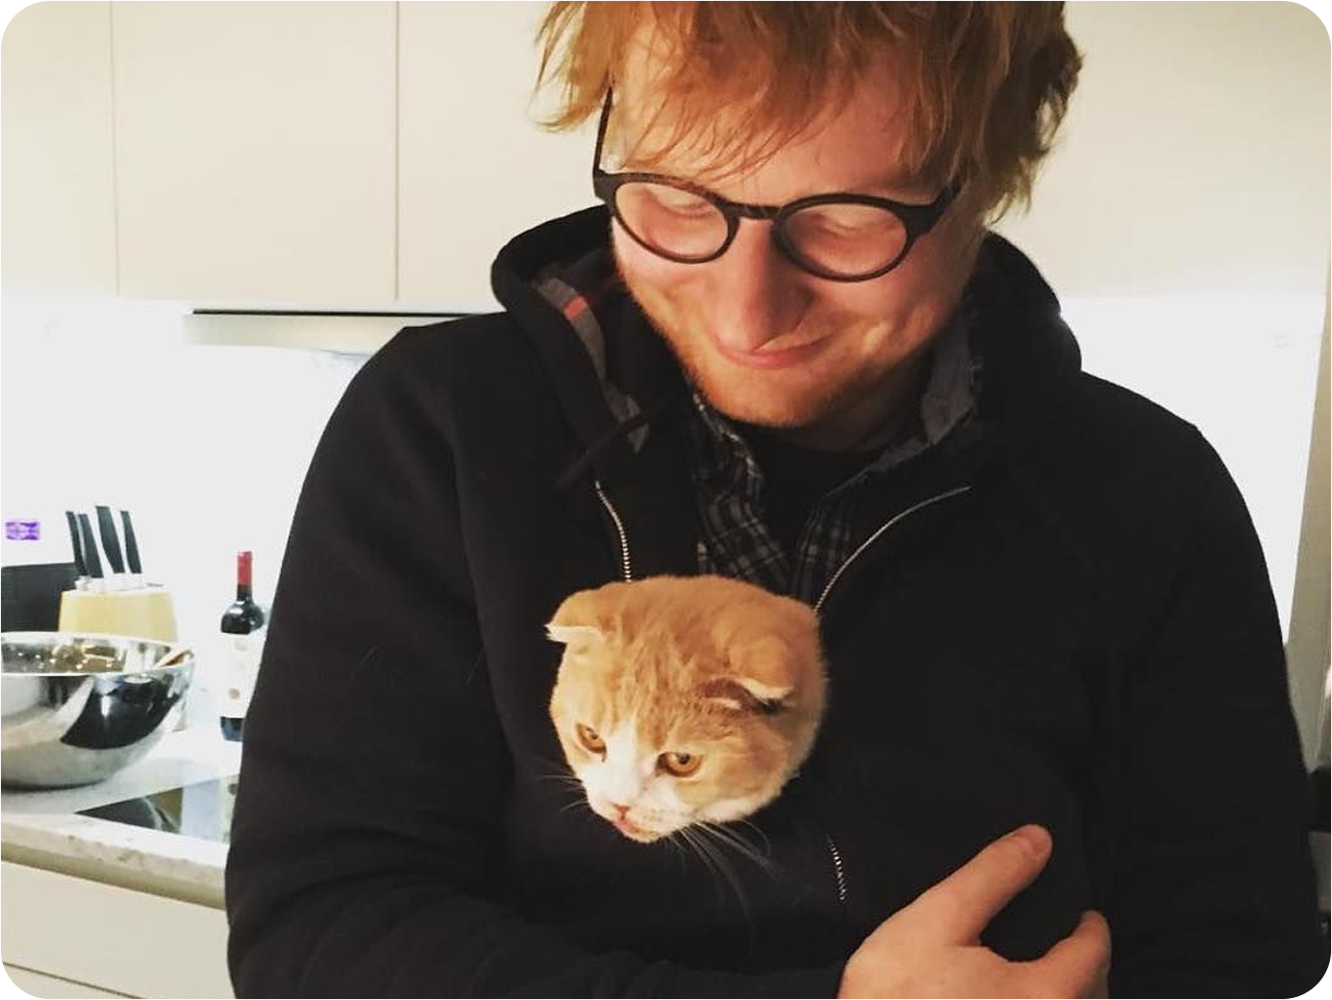  Según The Sun, Ed Sheeran y su mujer están a punto de tener su primer hijo